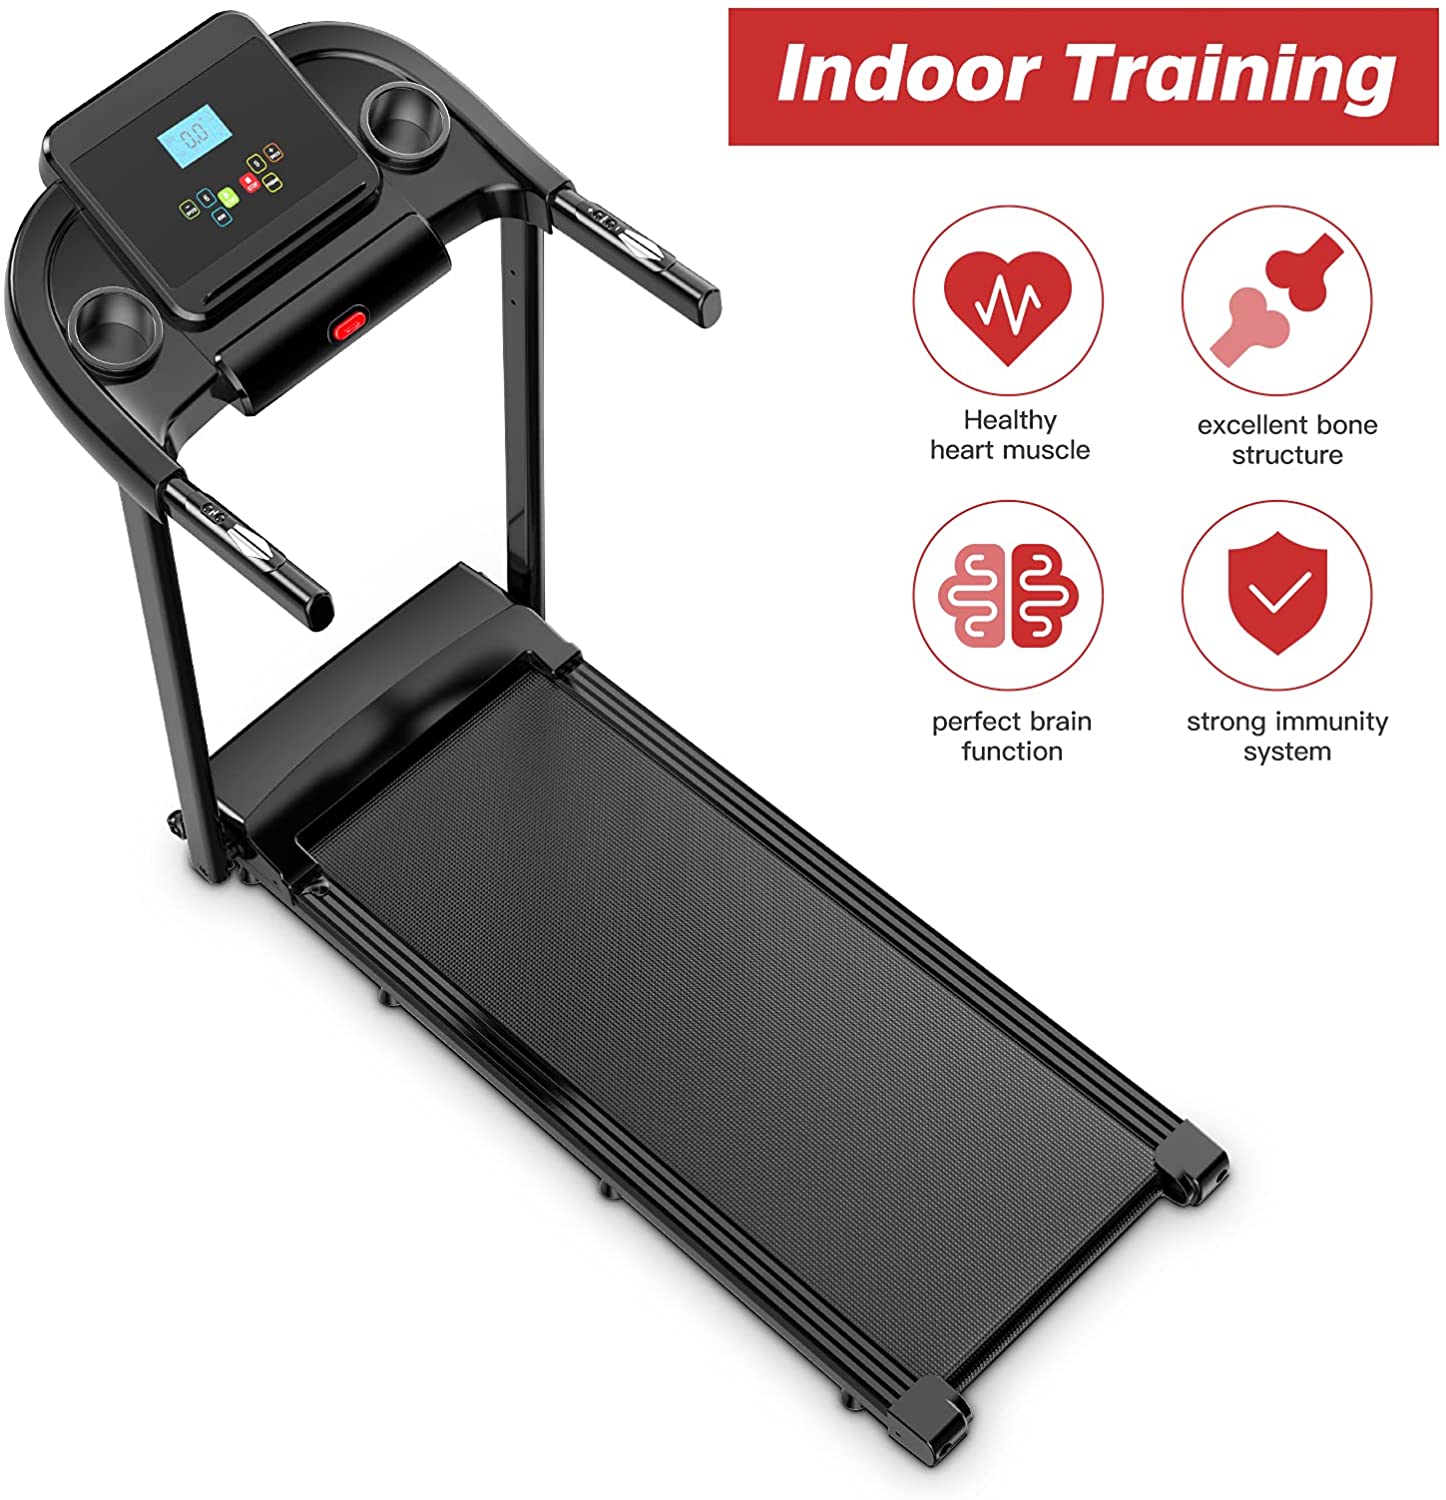 Dripex Treadmill Running Machine spec